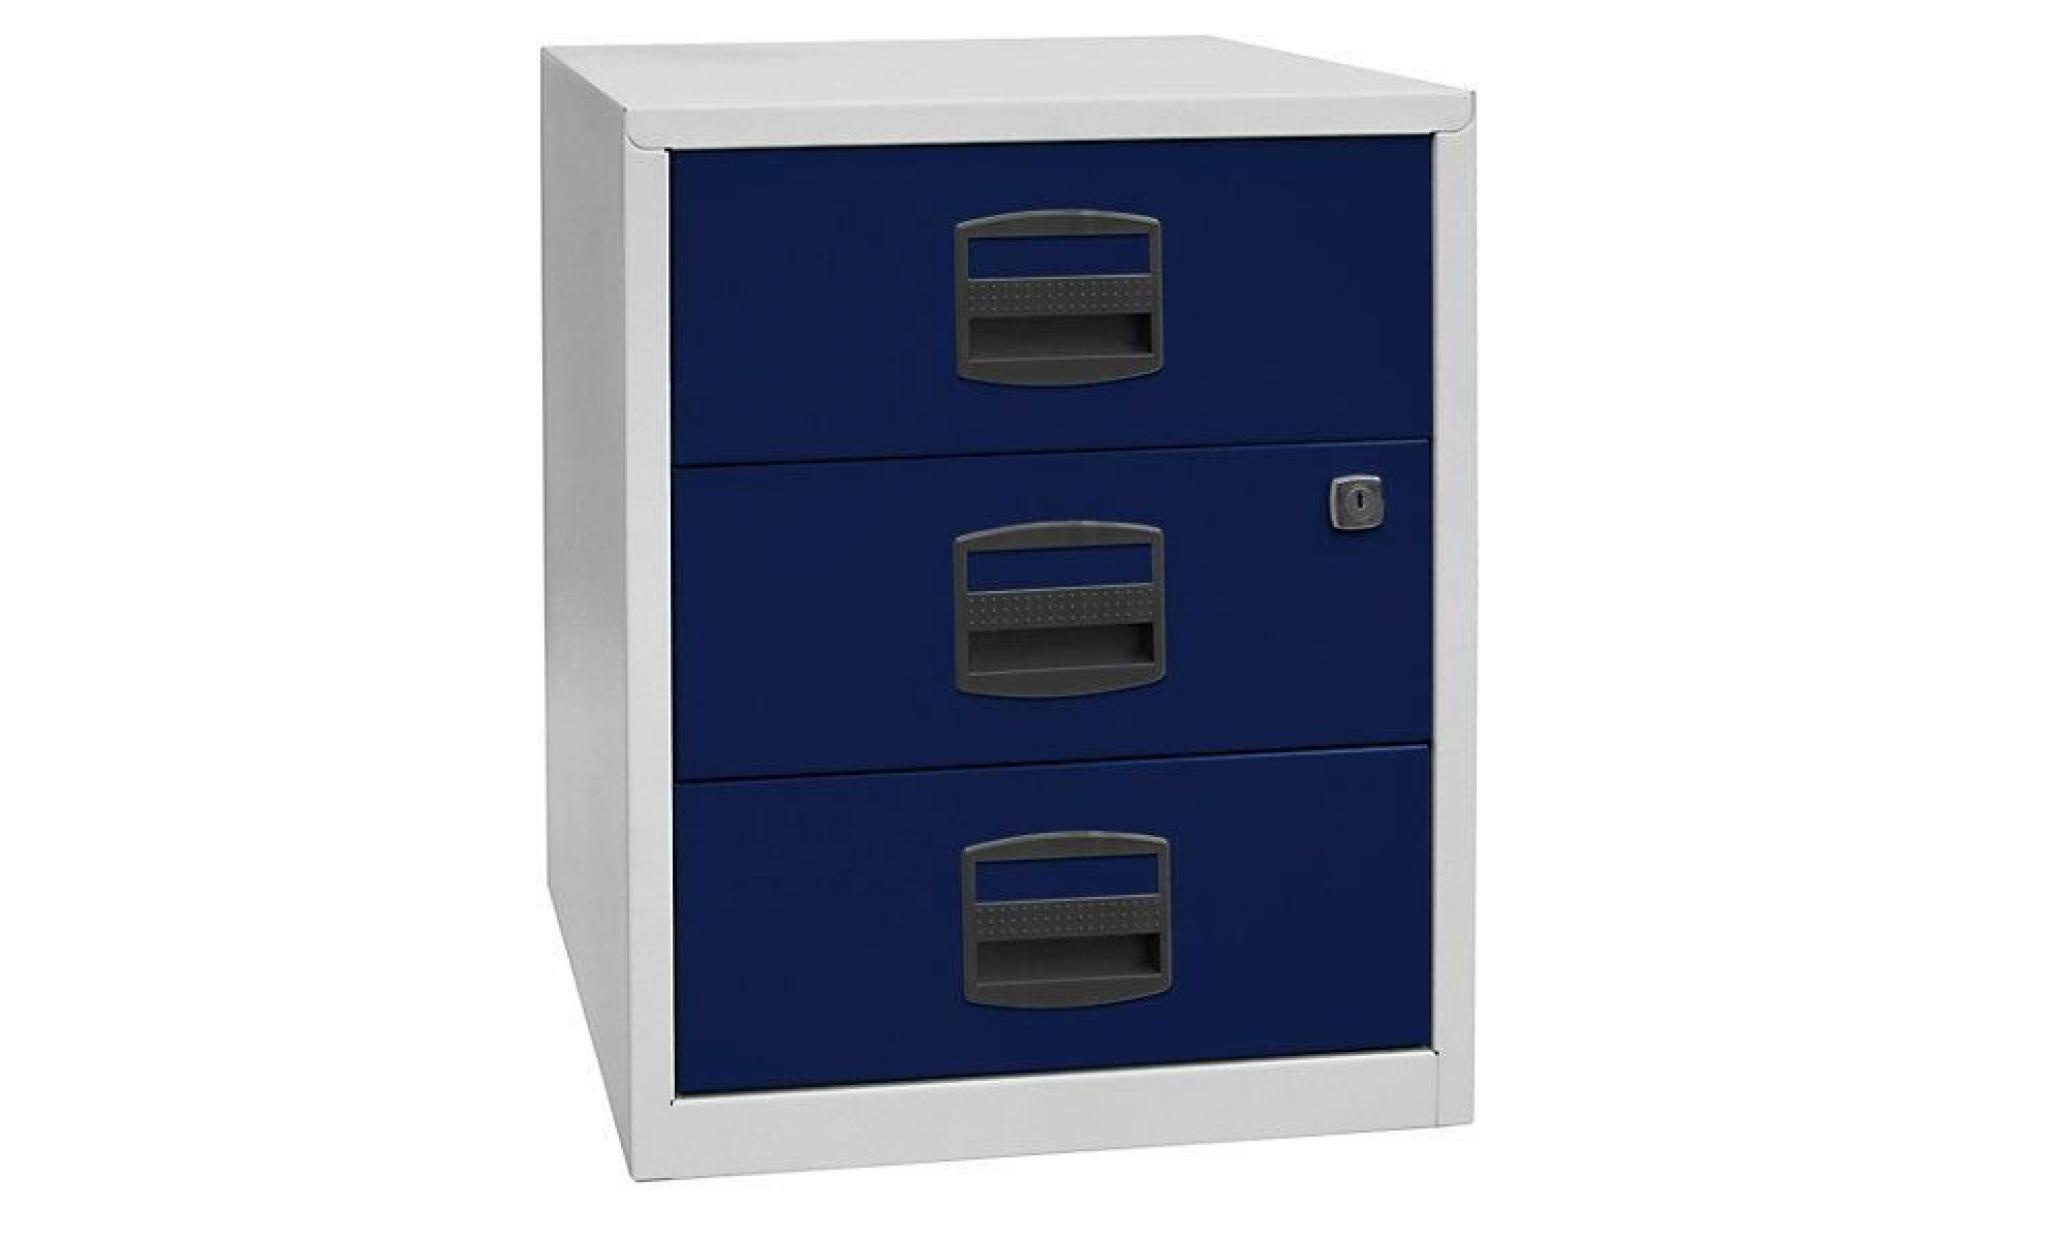 armoire mobile hauteur bureau pfa   3 tiroirs universels gris clair / bleu oxford   armoire basse armoire de bureau armoires basses